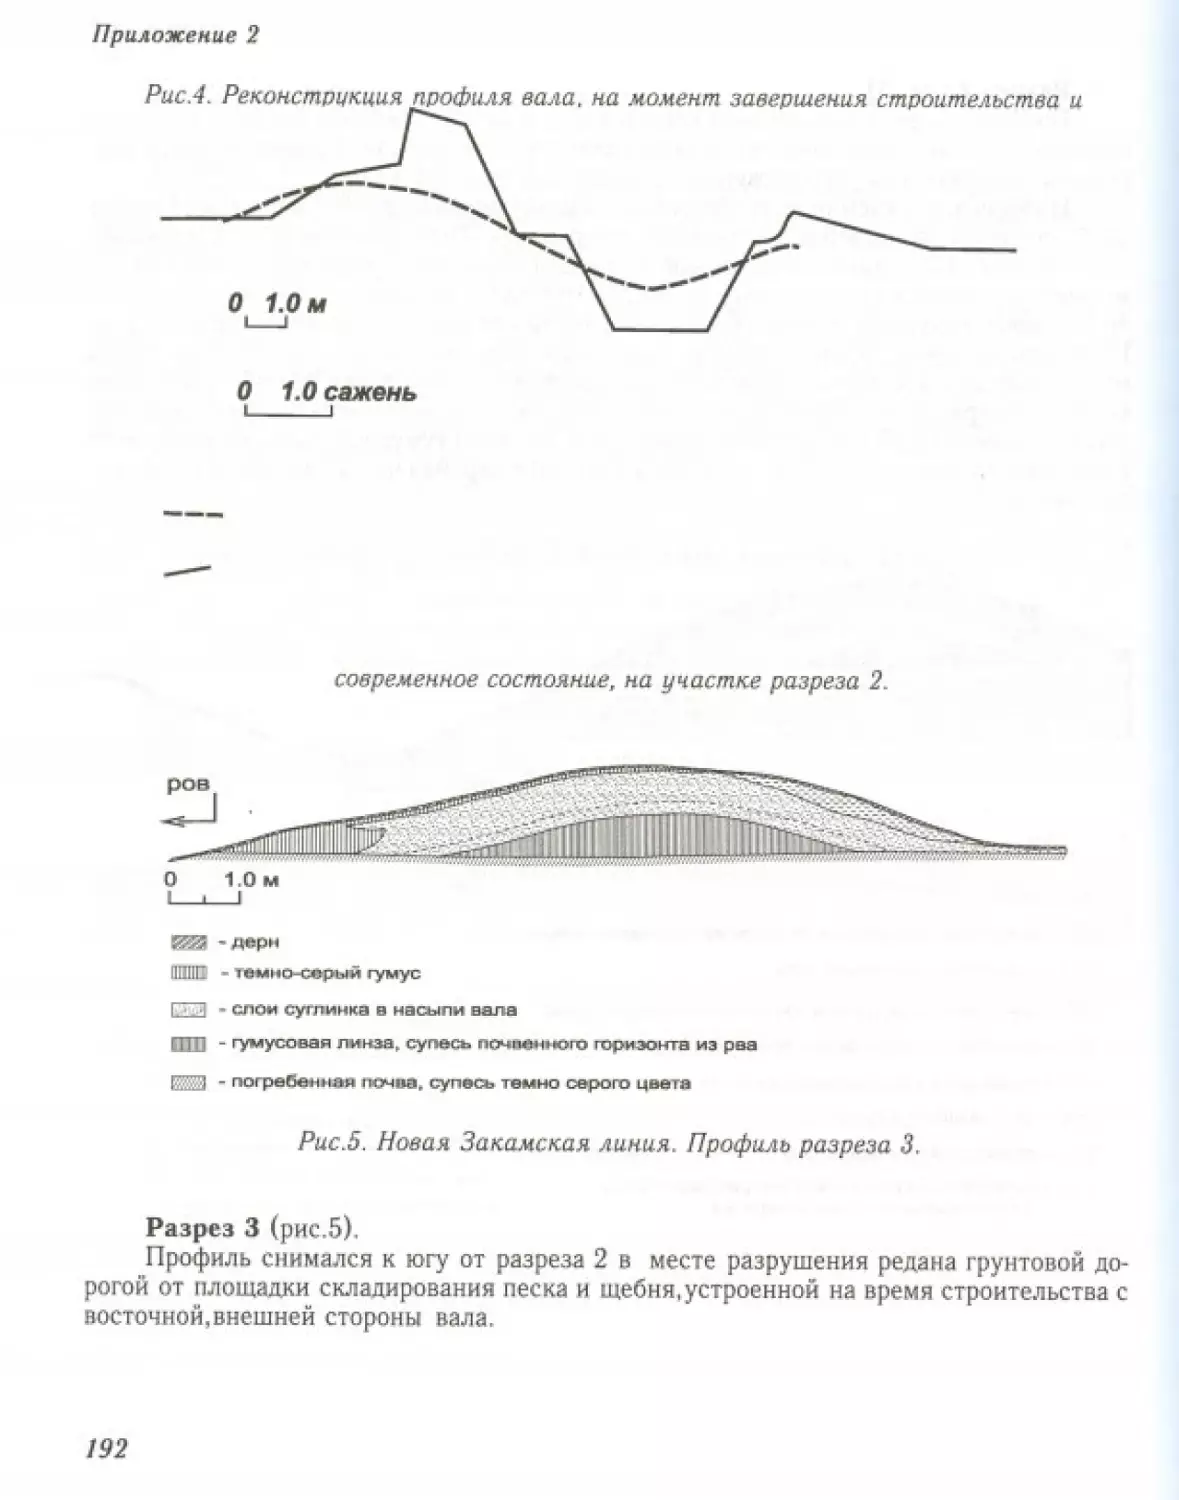 Вал0194.pdf (p.193)